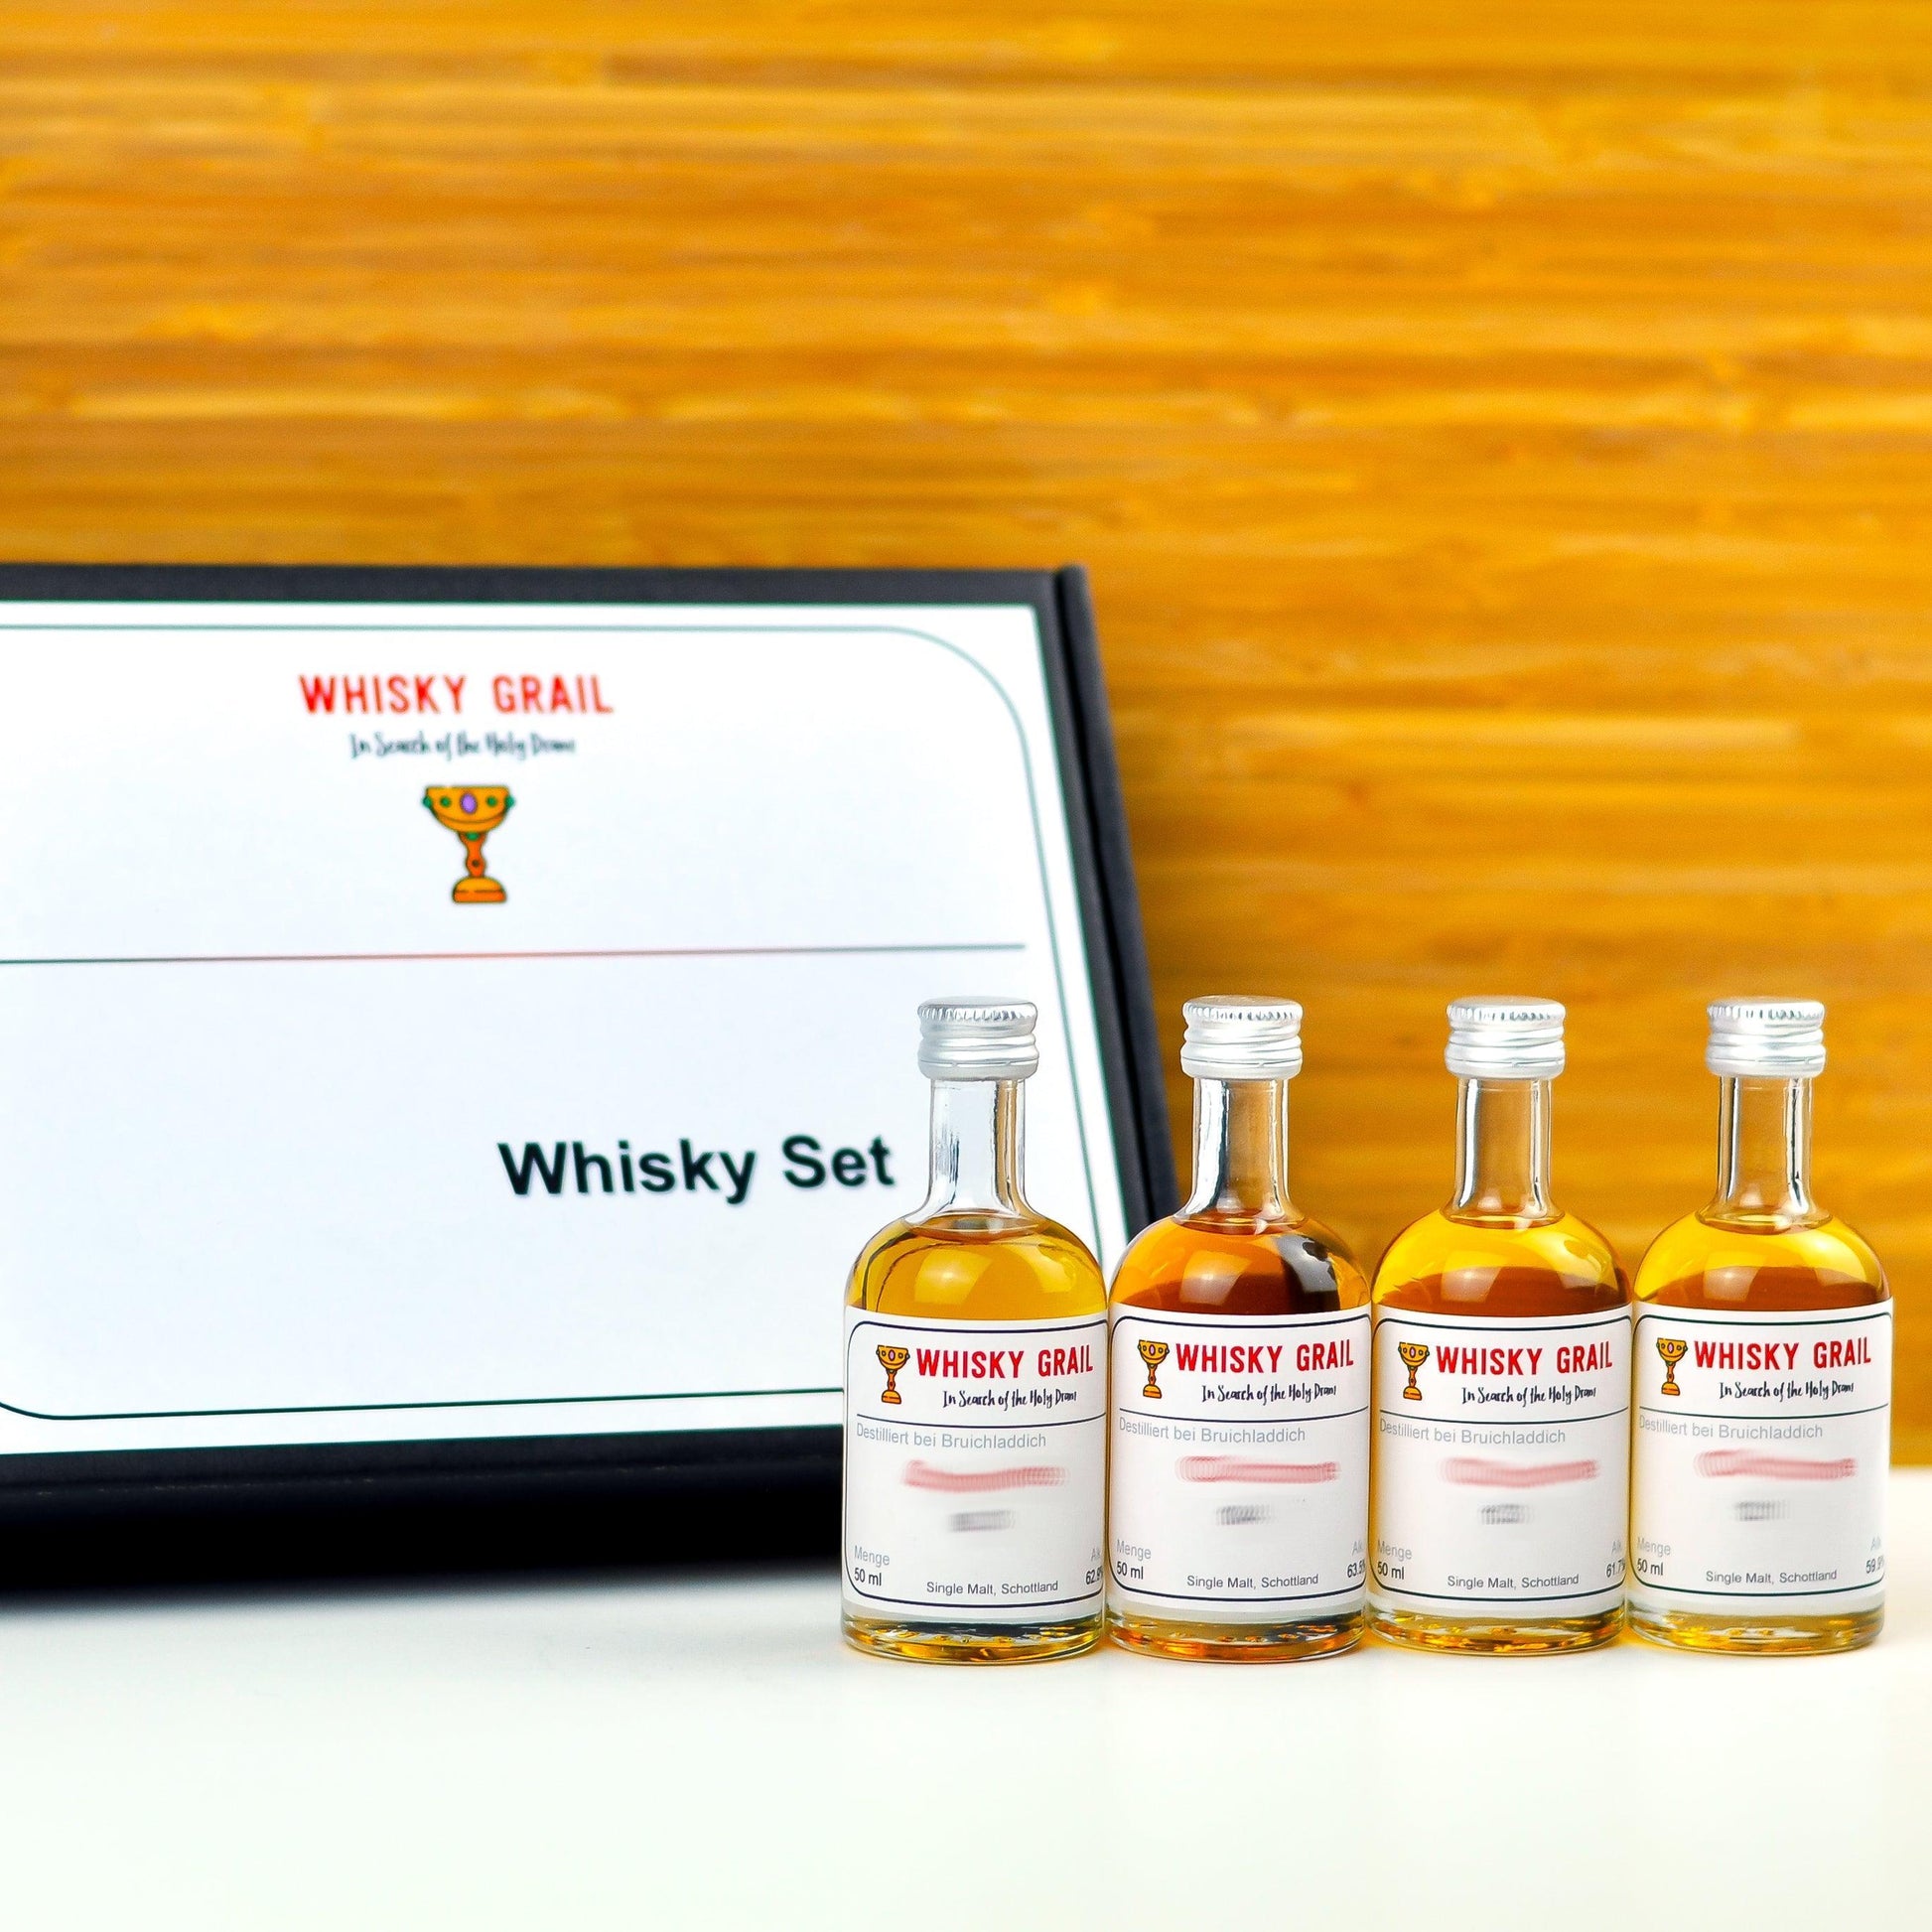 Rund um die Welt - Nordamerika - Whisky Grail